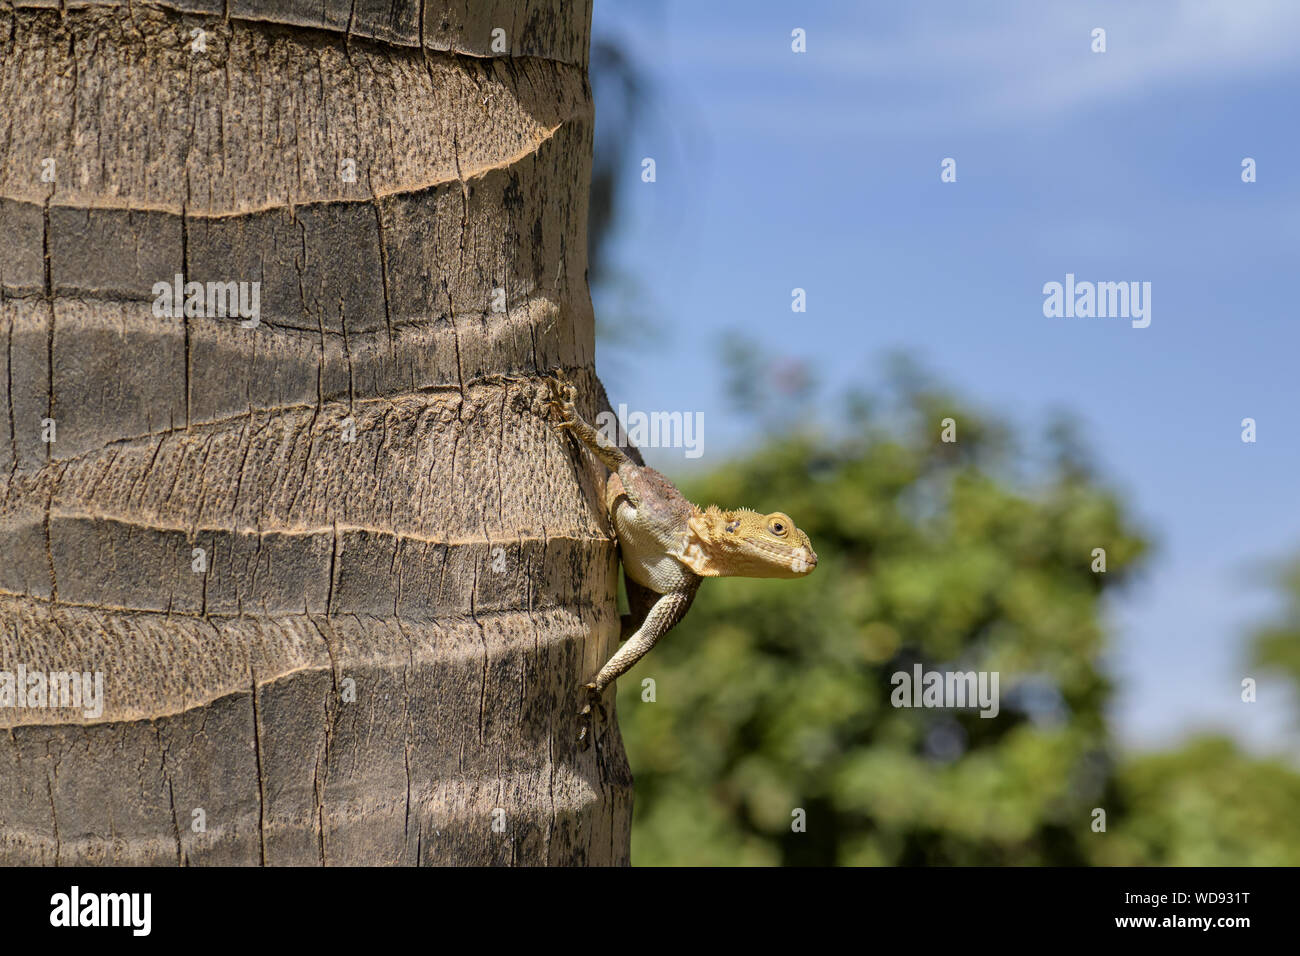 Arc-en-ciel de l'Afrique de l'Ouest - Lézard Agama africana, commune jardin typique de lézard dans l'Afrique de l'Ouest, la Somone, au Sénégal. Banque D'Images